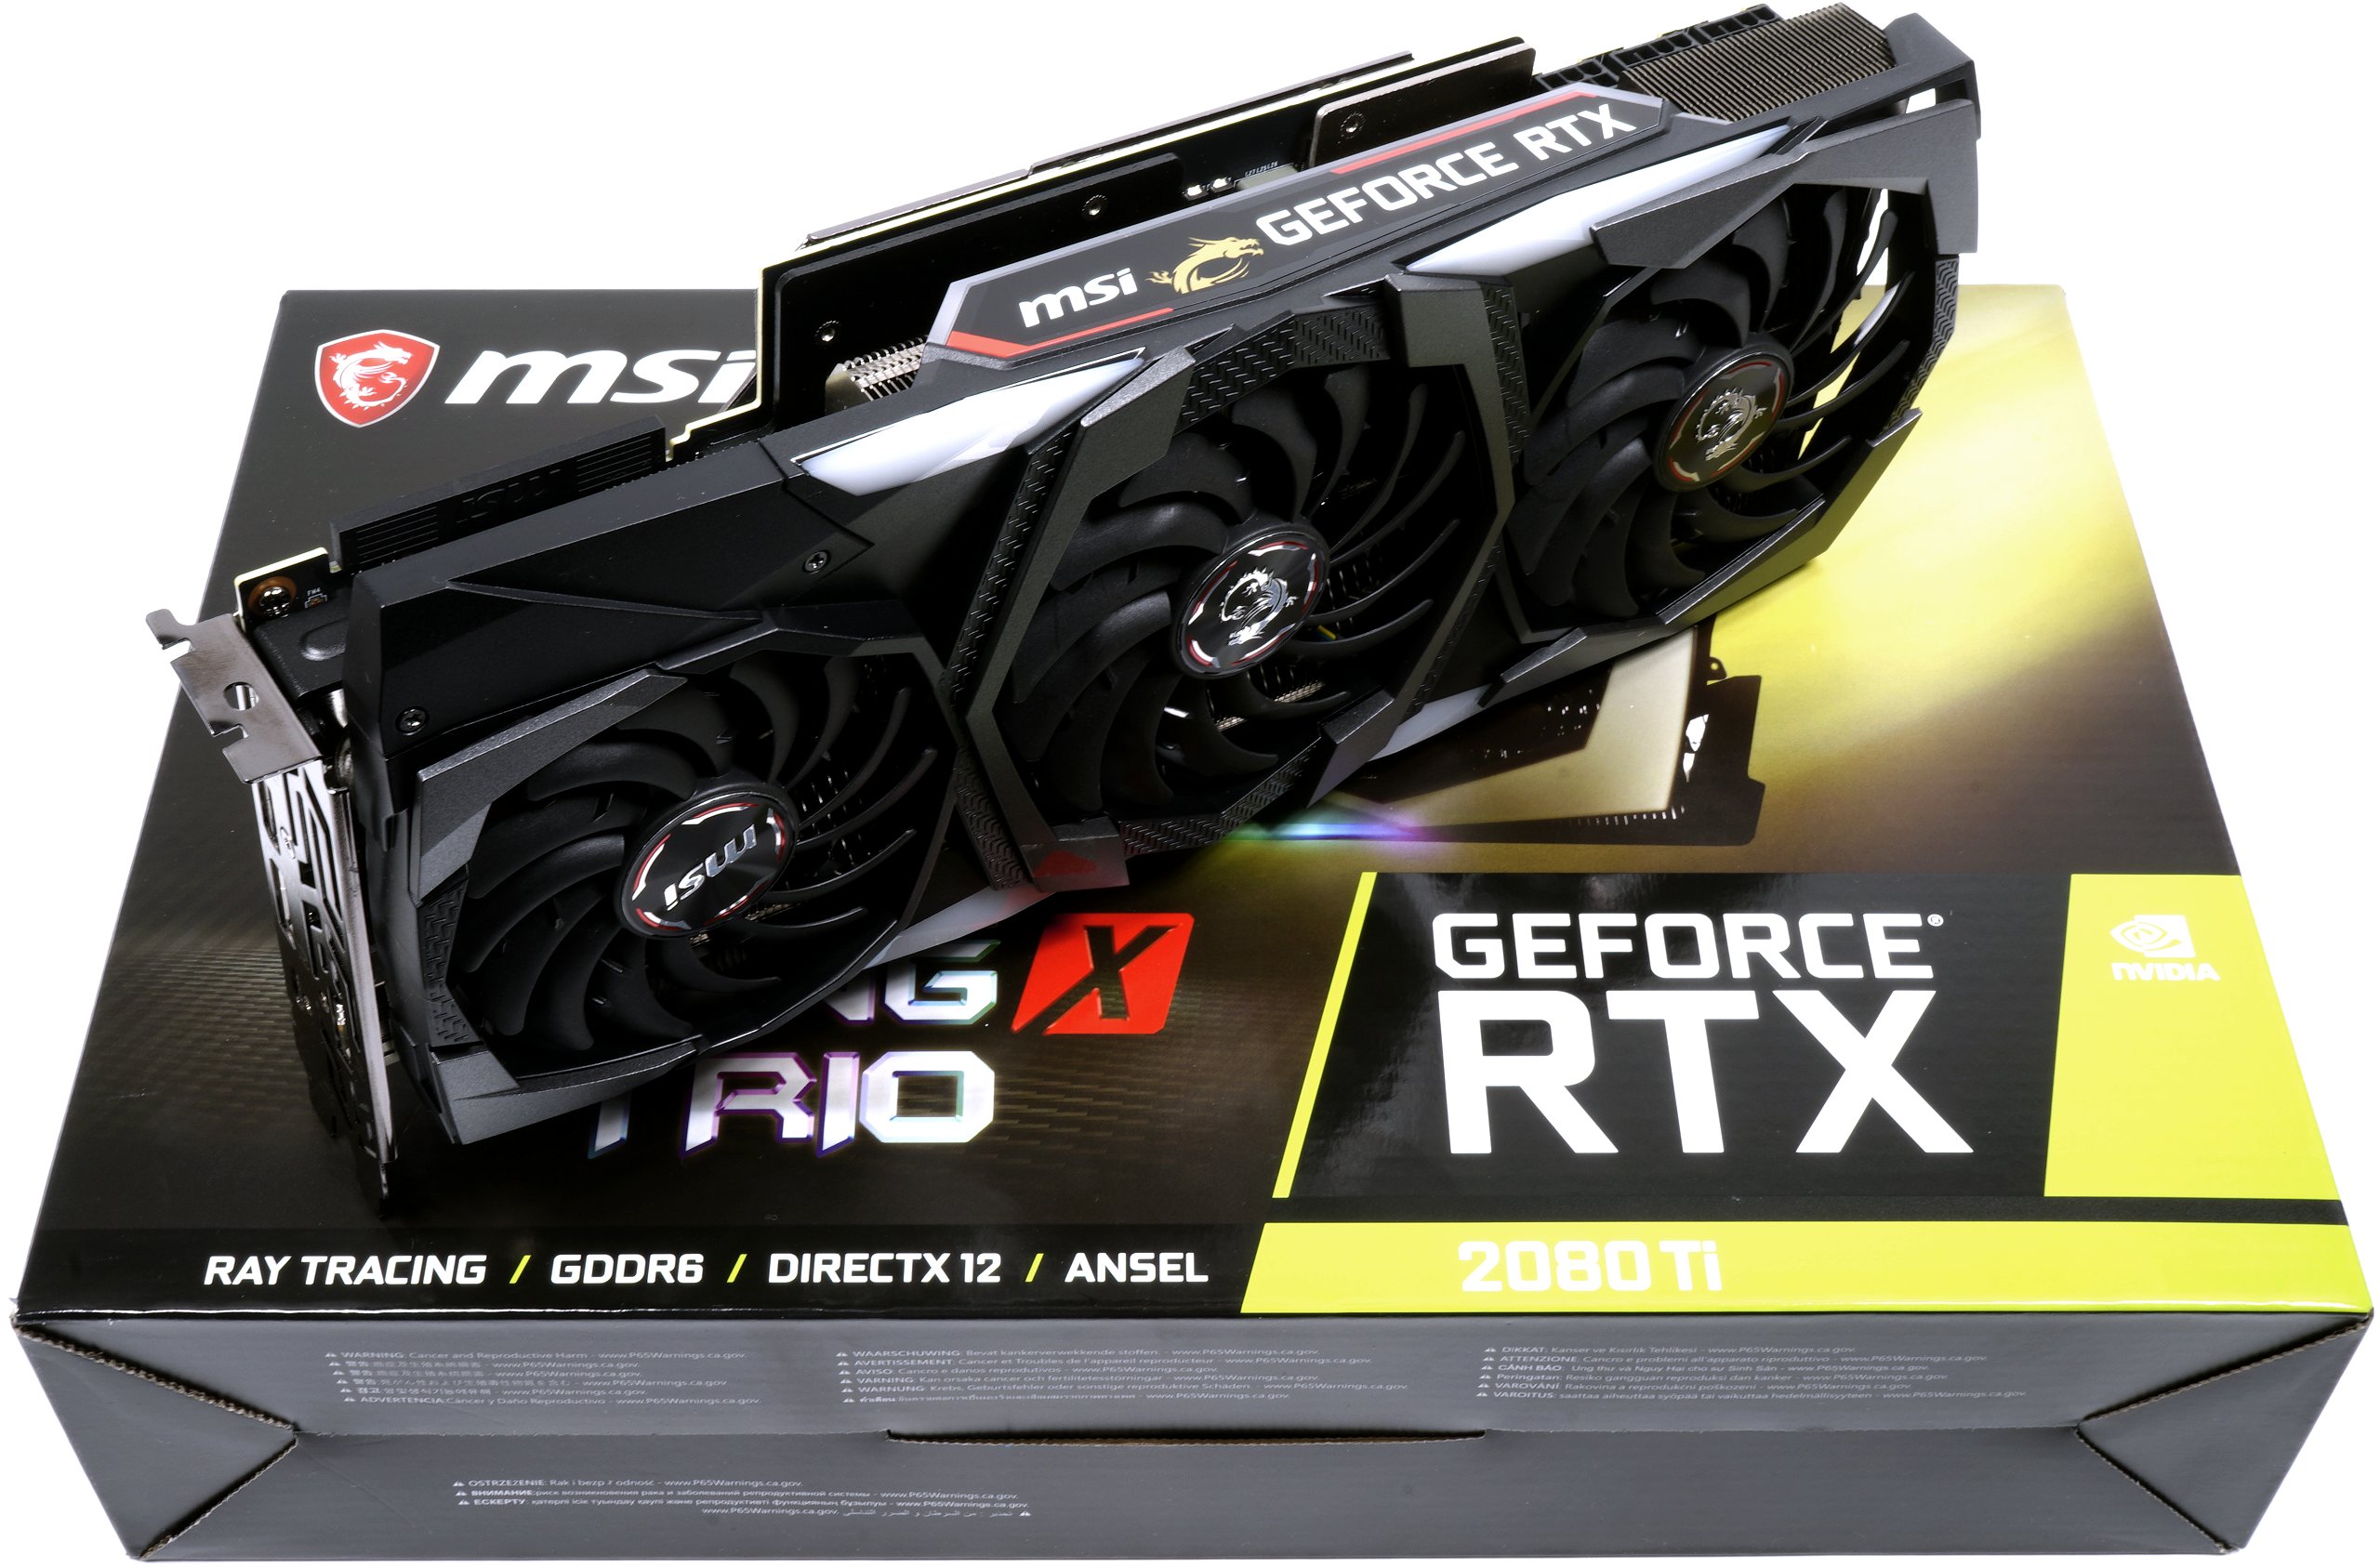 NVIDIA GeForce RTX 2080 Ti 12 GB Specs